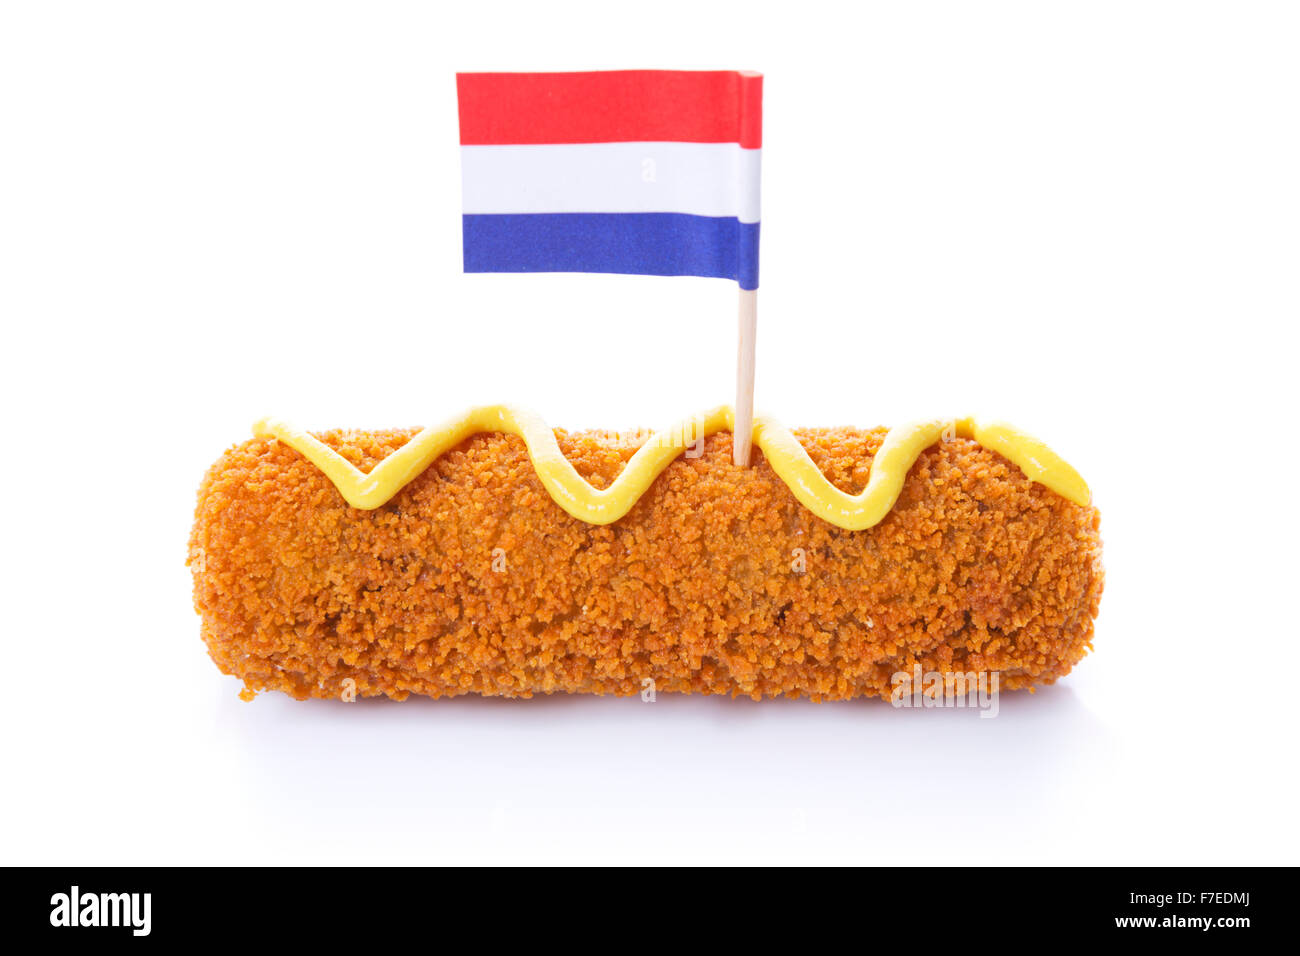 Eine holländische Fleisch-Kroketten ("Kroket") mit Senf und eine niederländische Flagge, isoliert auf weiss. Stockfoto